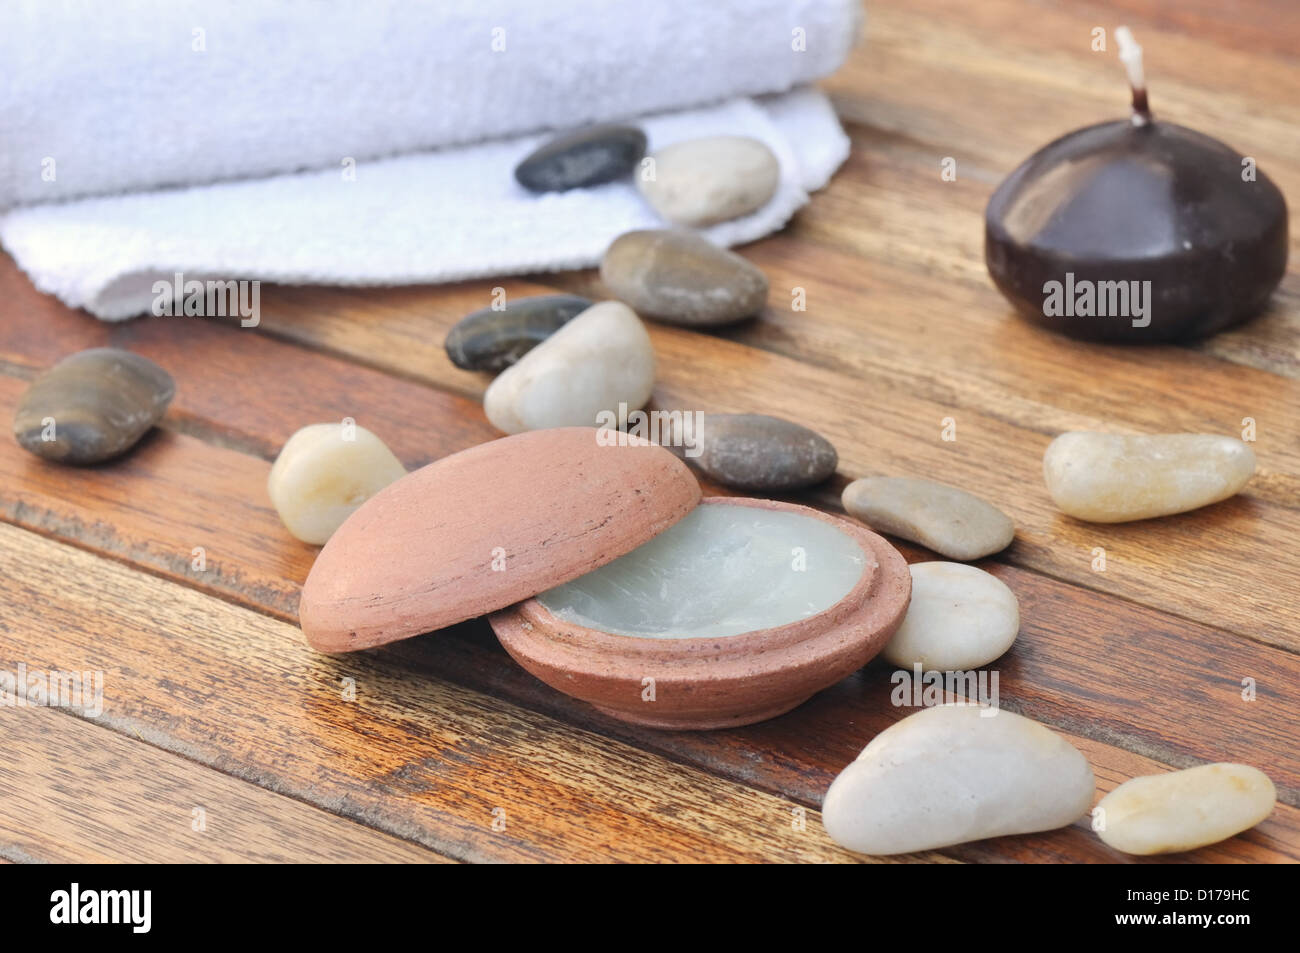 Massage-Balsam in einem kleinen Tontopf mit Steinen und ein Handtuch auf die hölzernen Latten gelegt Stockfoto